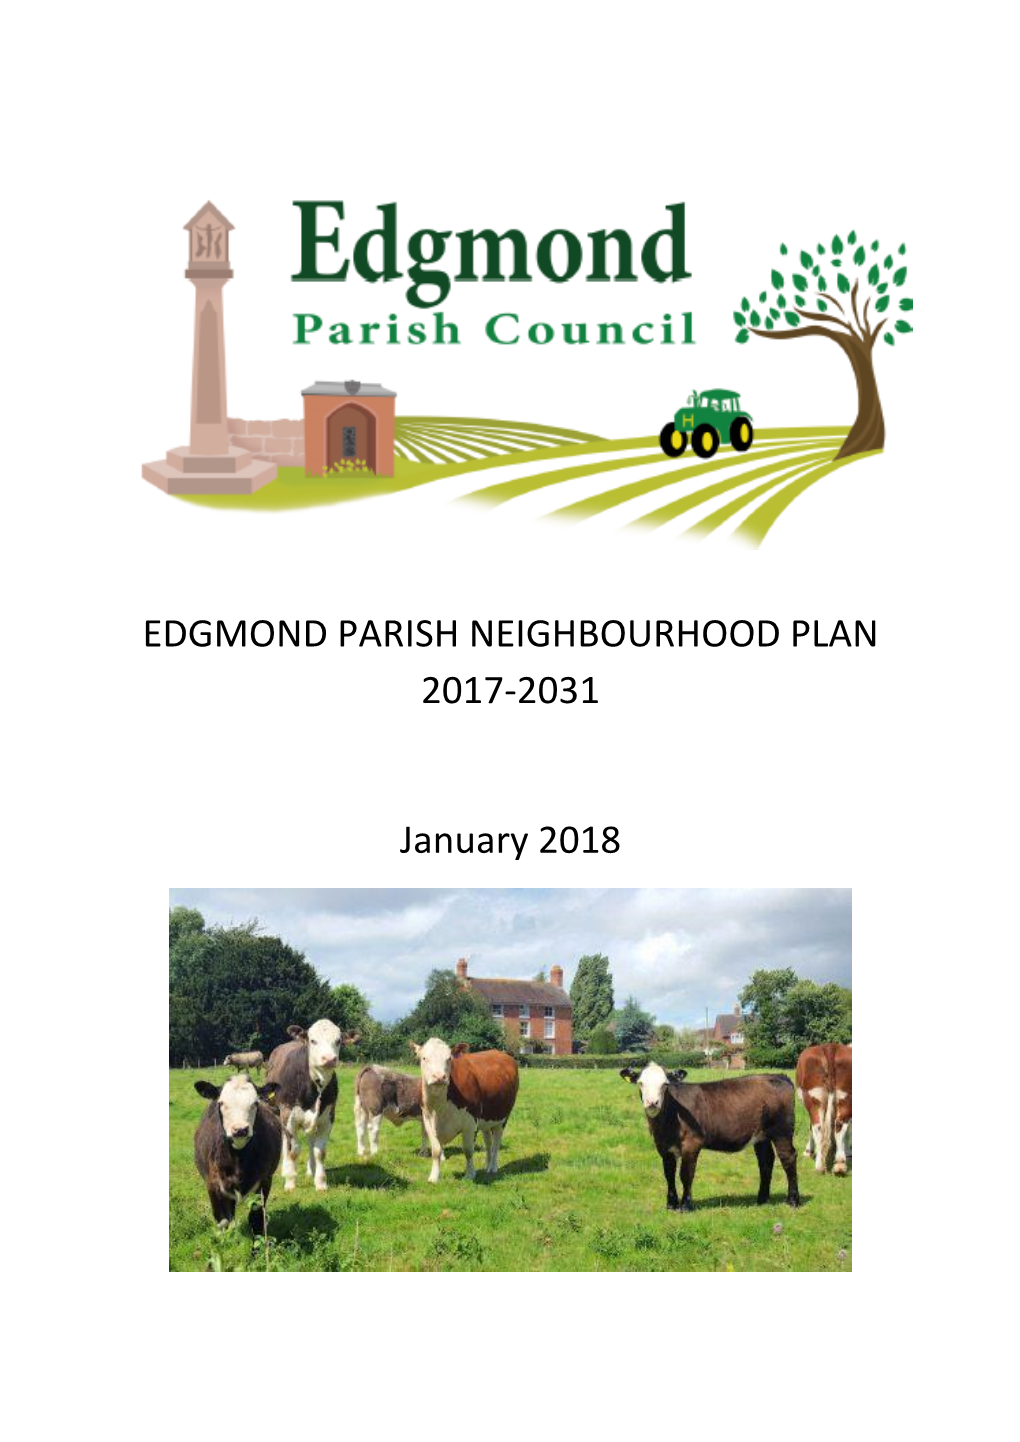 Neighbourhood Plan 2017-2031